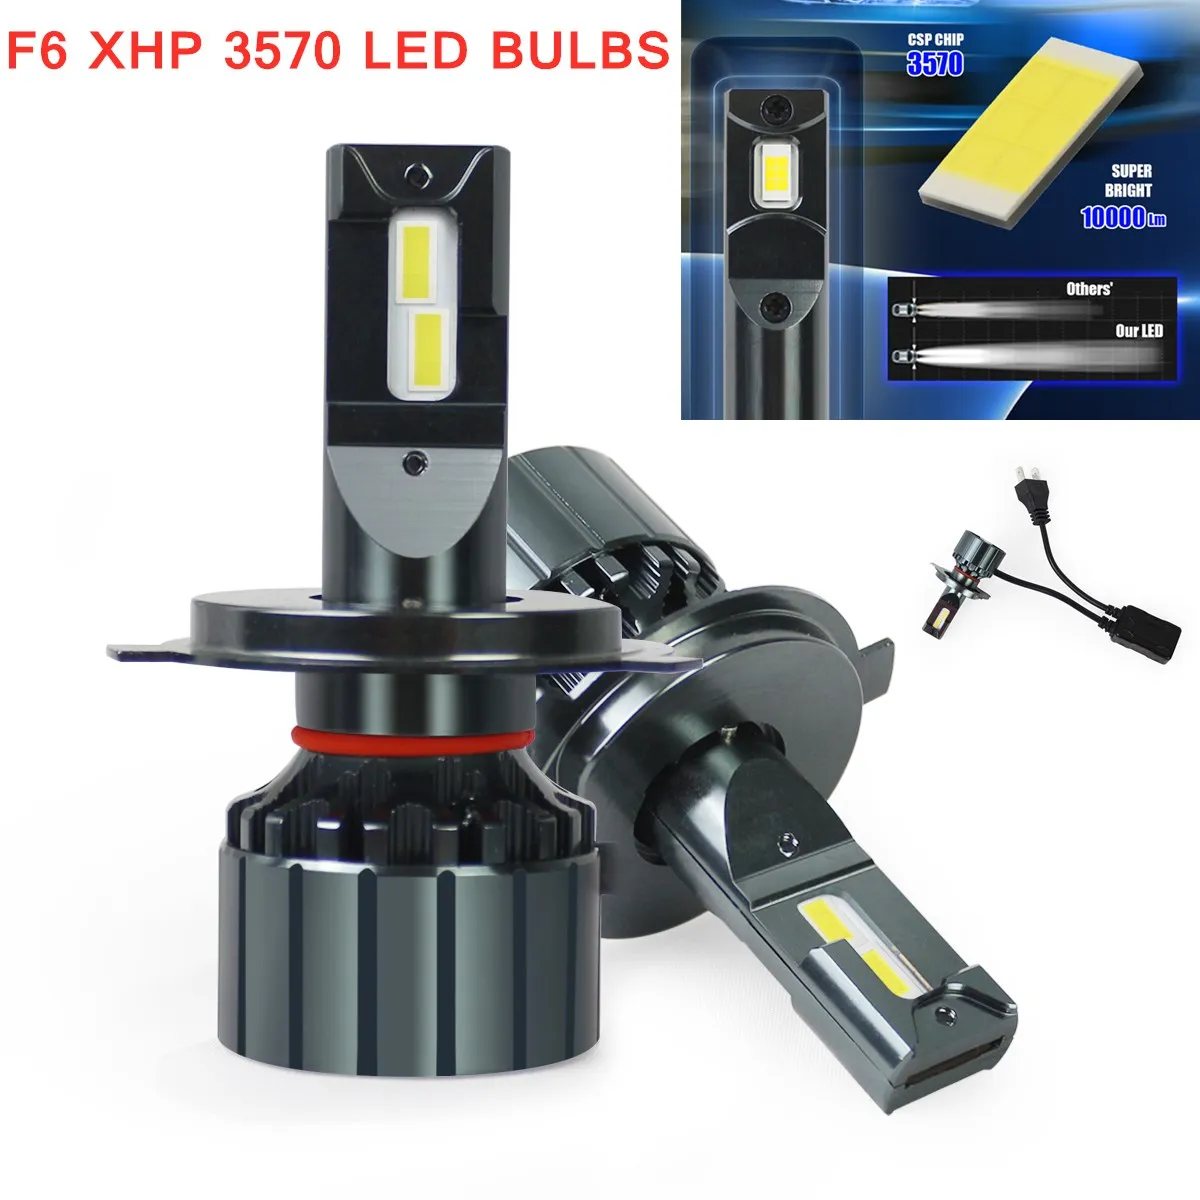 

12V 24V 3570 chips 6000K H4 LED H7 canbus H11 H8 HB4 H1 9005 HB3 9006 Auto Lamp Car Headlight Bulbs 120W 20000LM Ampoule Bulbs